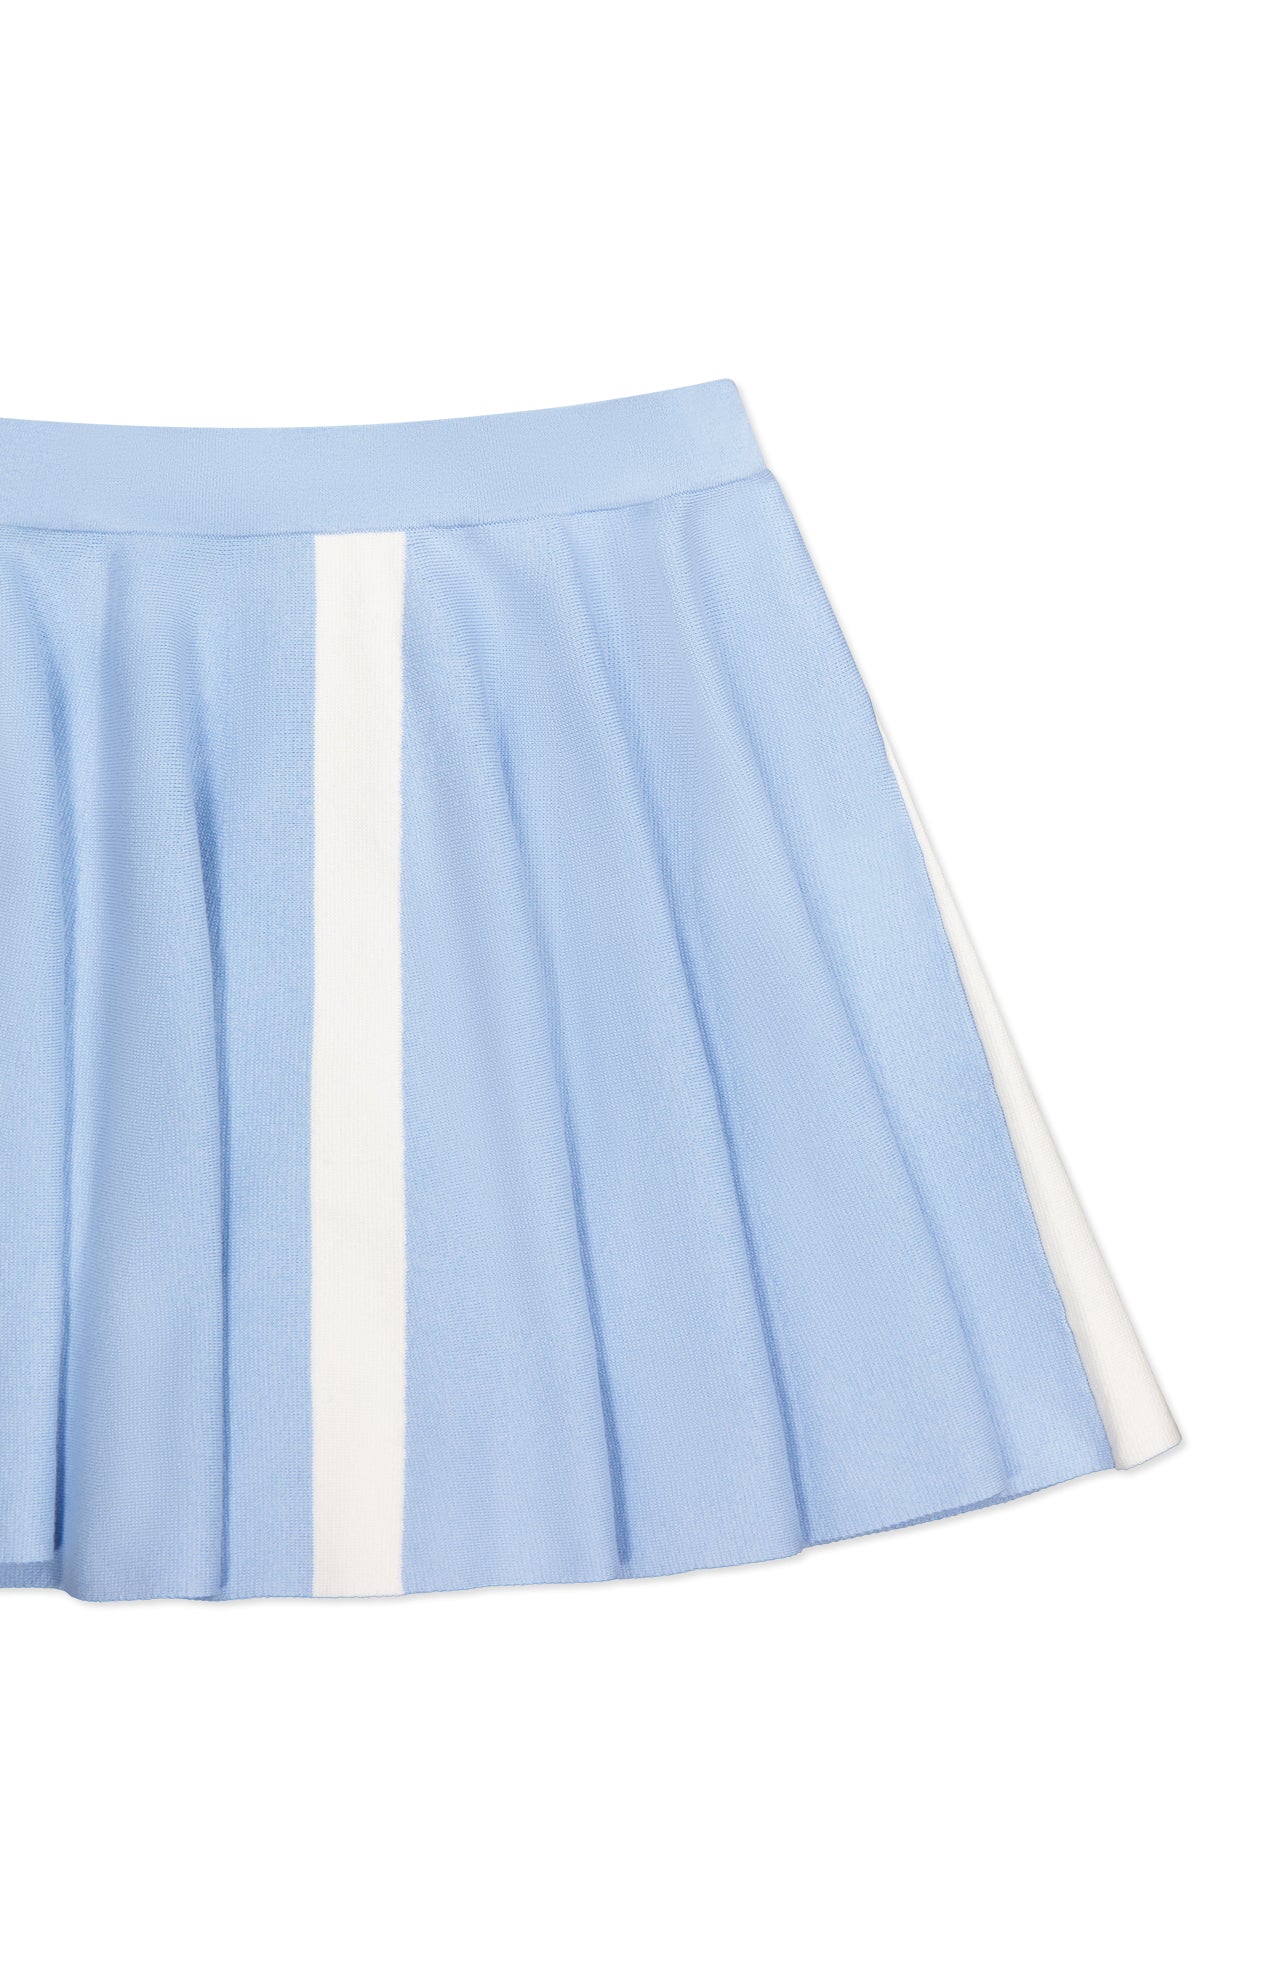 JW Anderson Women's Contrast A Line Mini Skirt | A.K. Rikk's